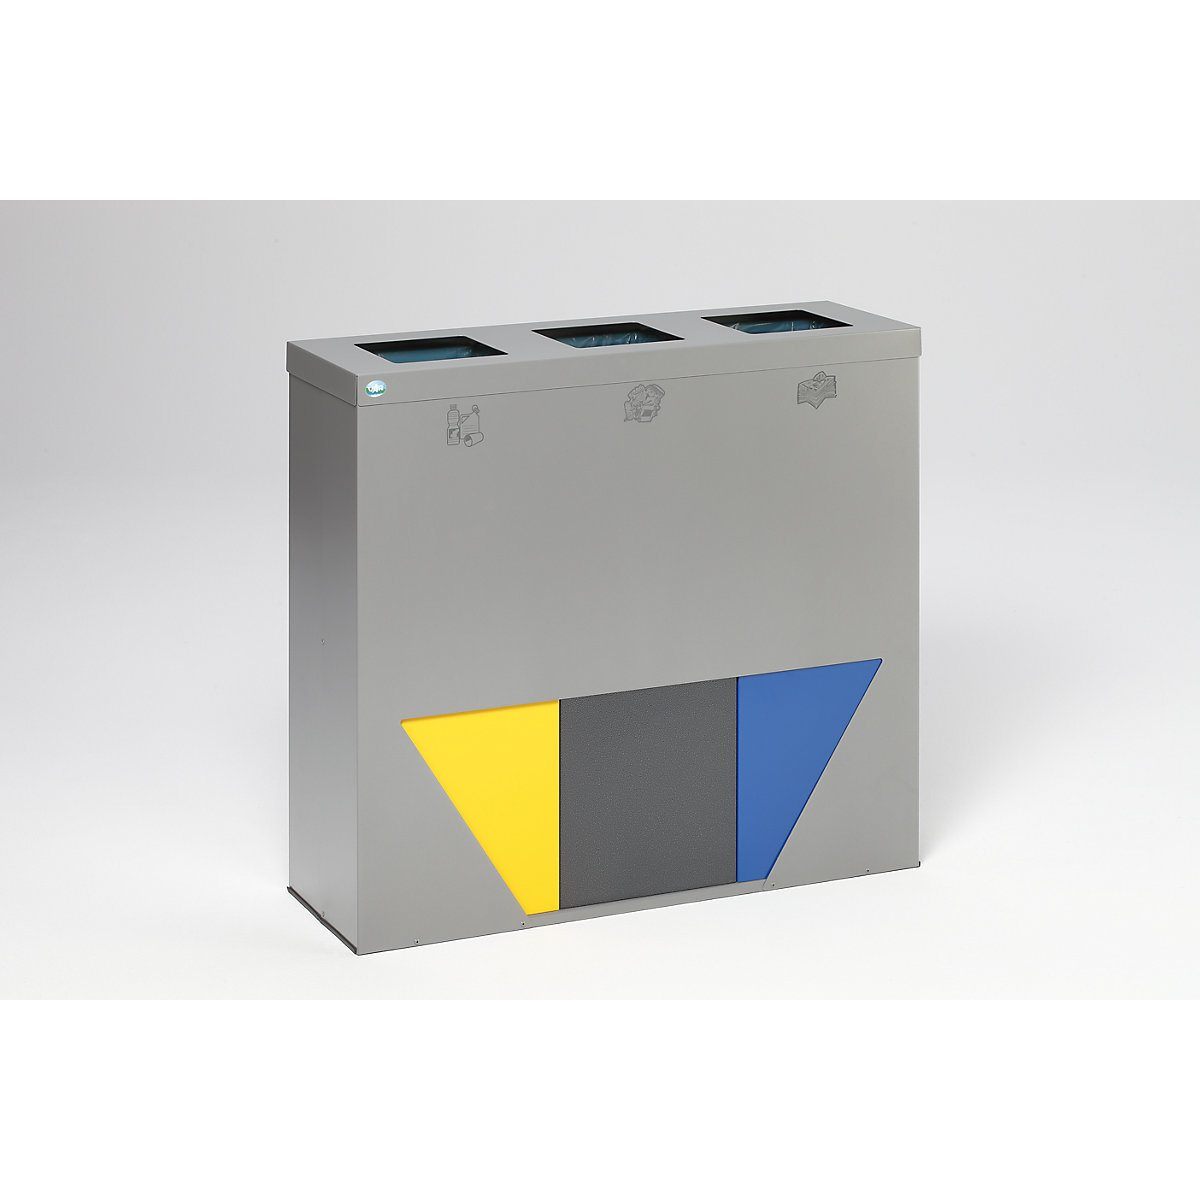 VAR – Estación de separación de materiales TRAPEZ, con pieza superpuesta y anillo de sujeción, color plata con 3 insertos en amarillo / plata vieja / azul